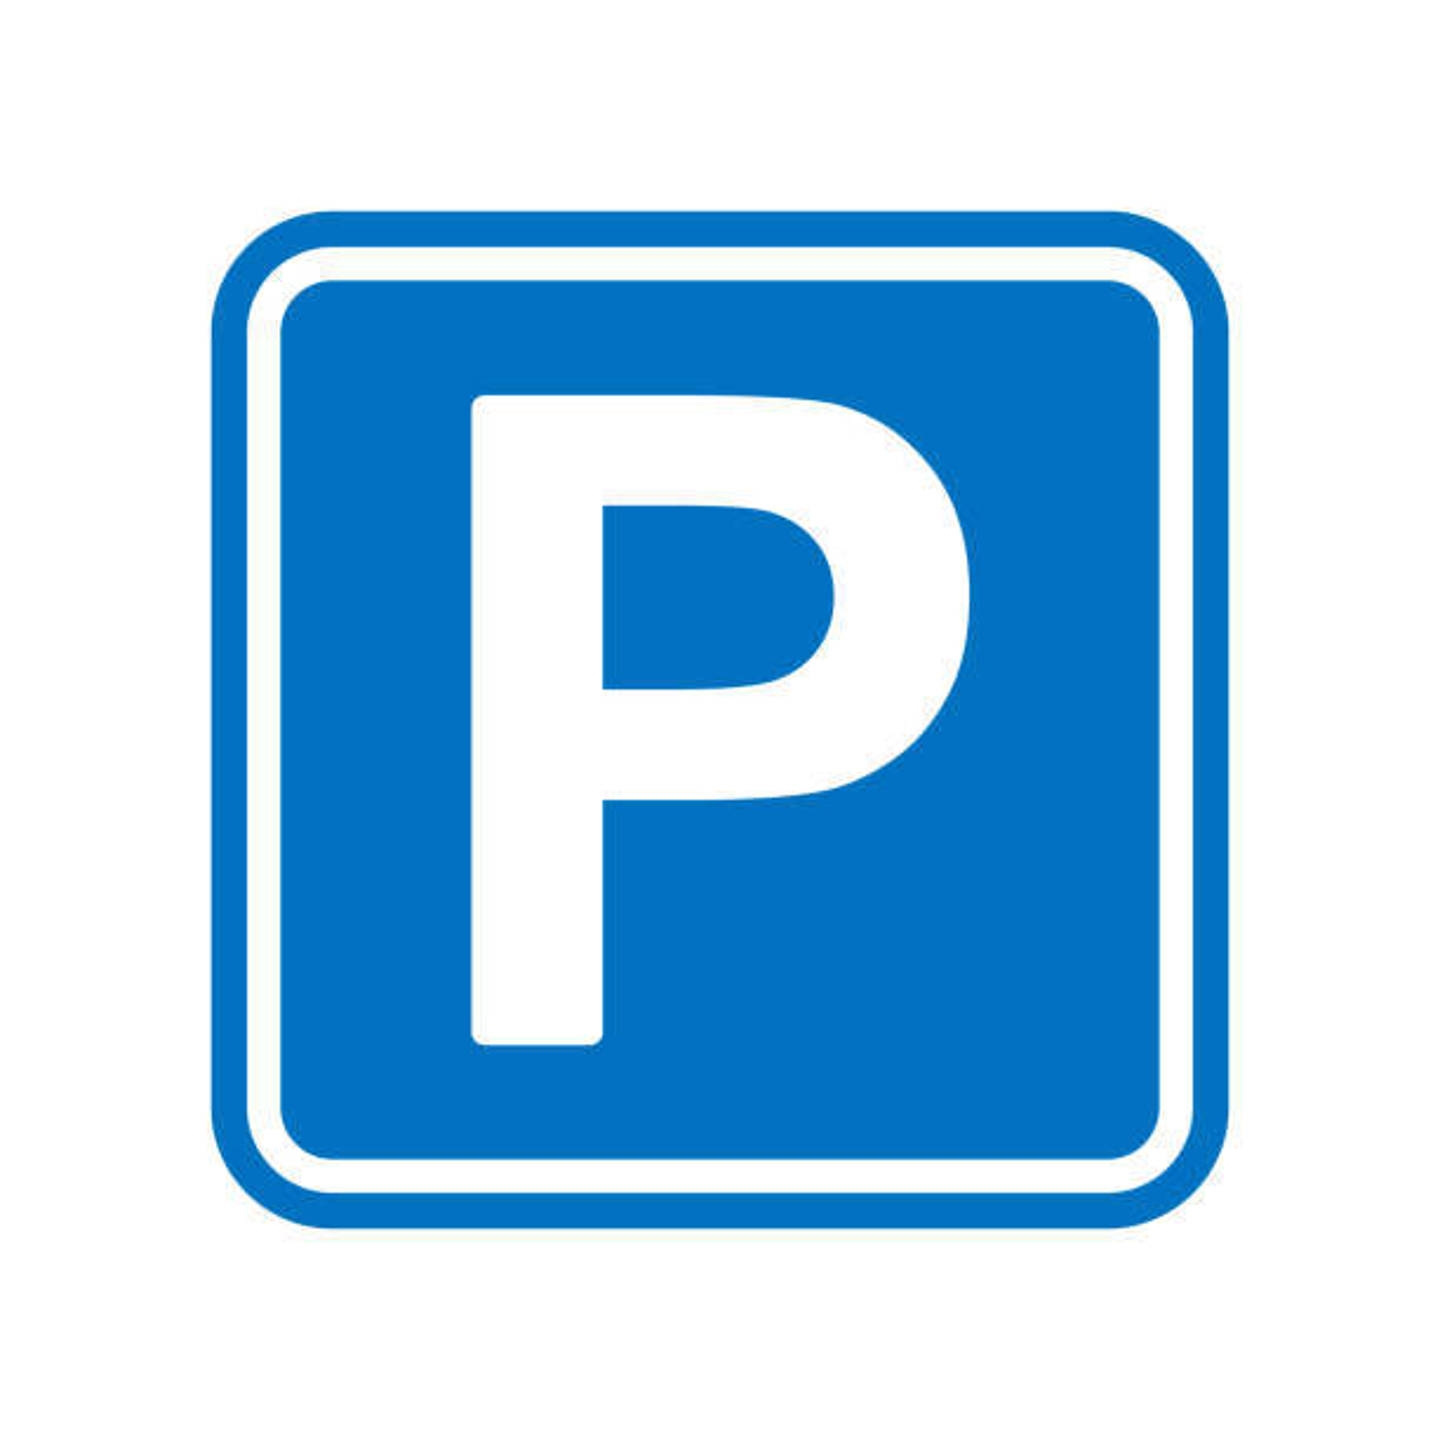 Parking / garage à vendre à Molenbeek-Saint-Jean 1080 15450.00€  chambres 12.50m² - annonce 41288